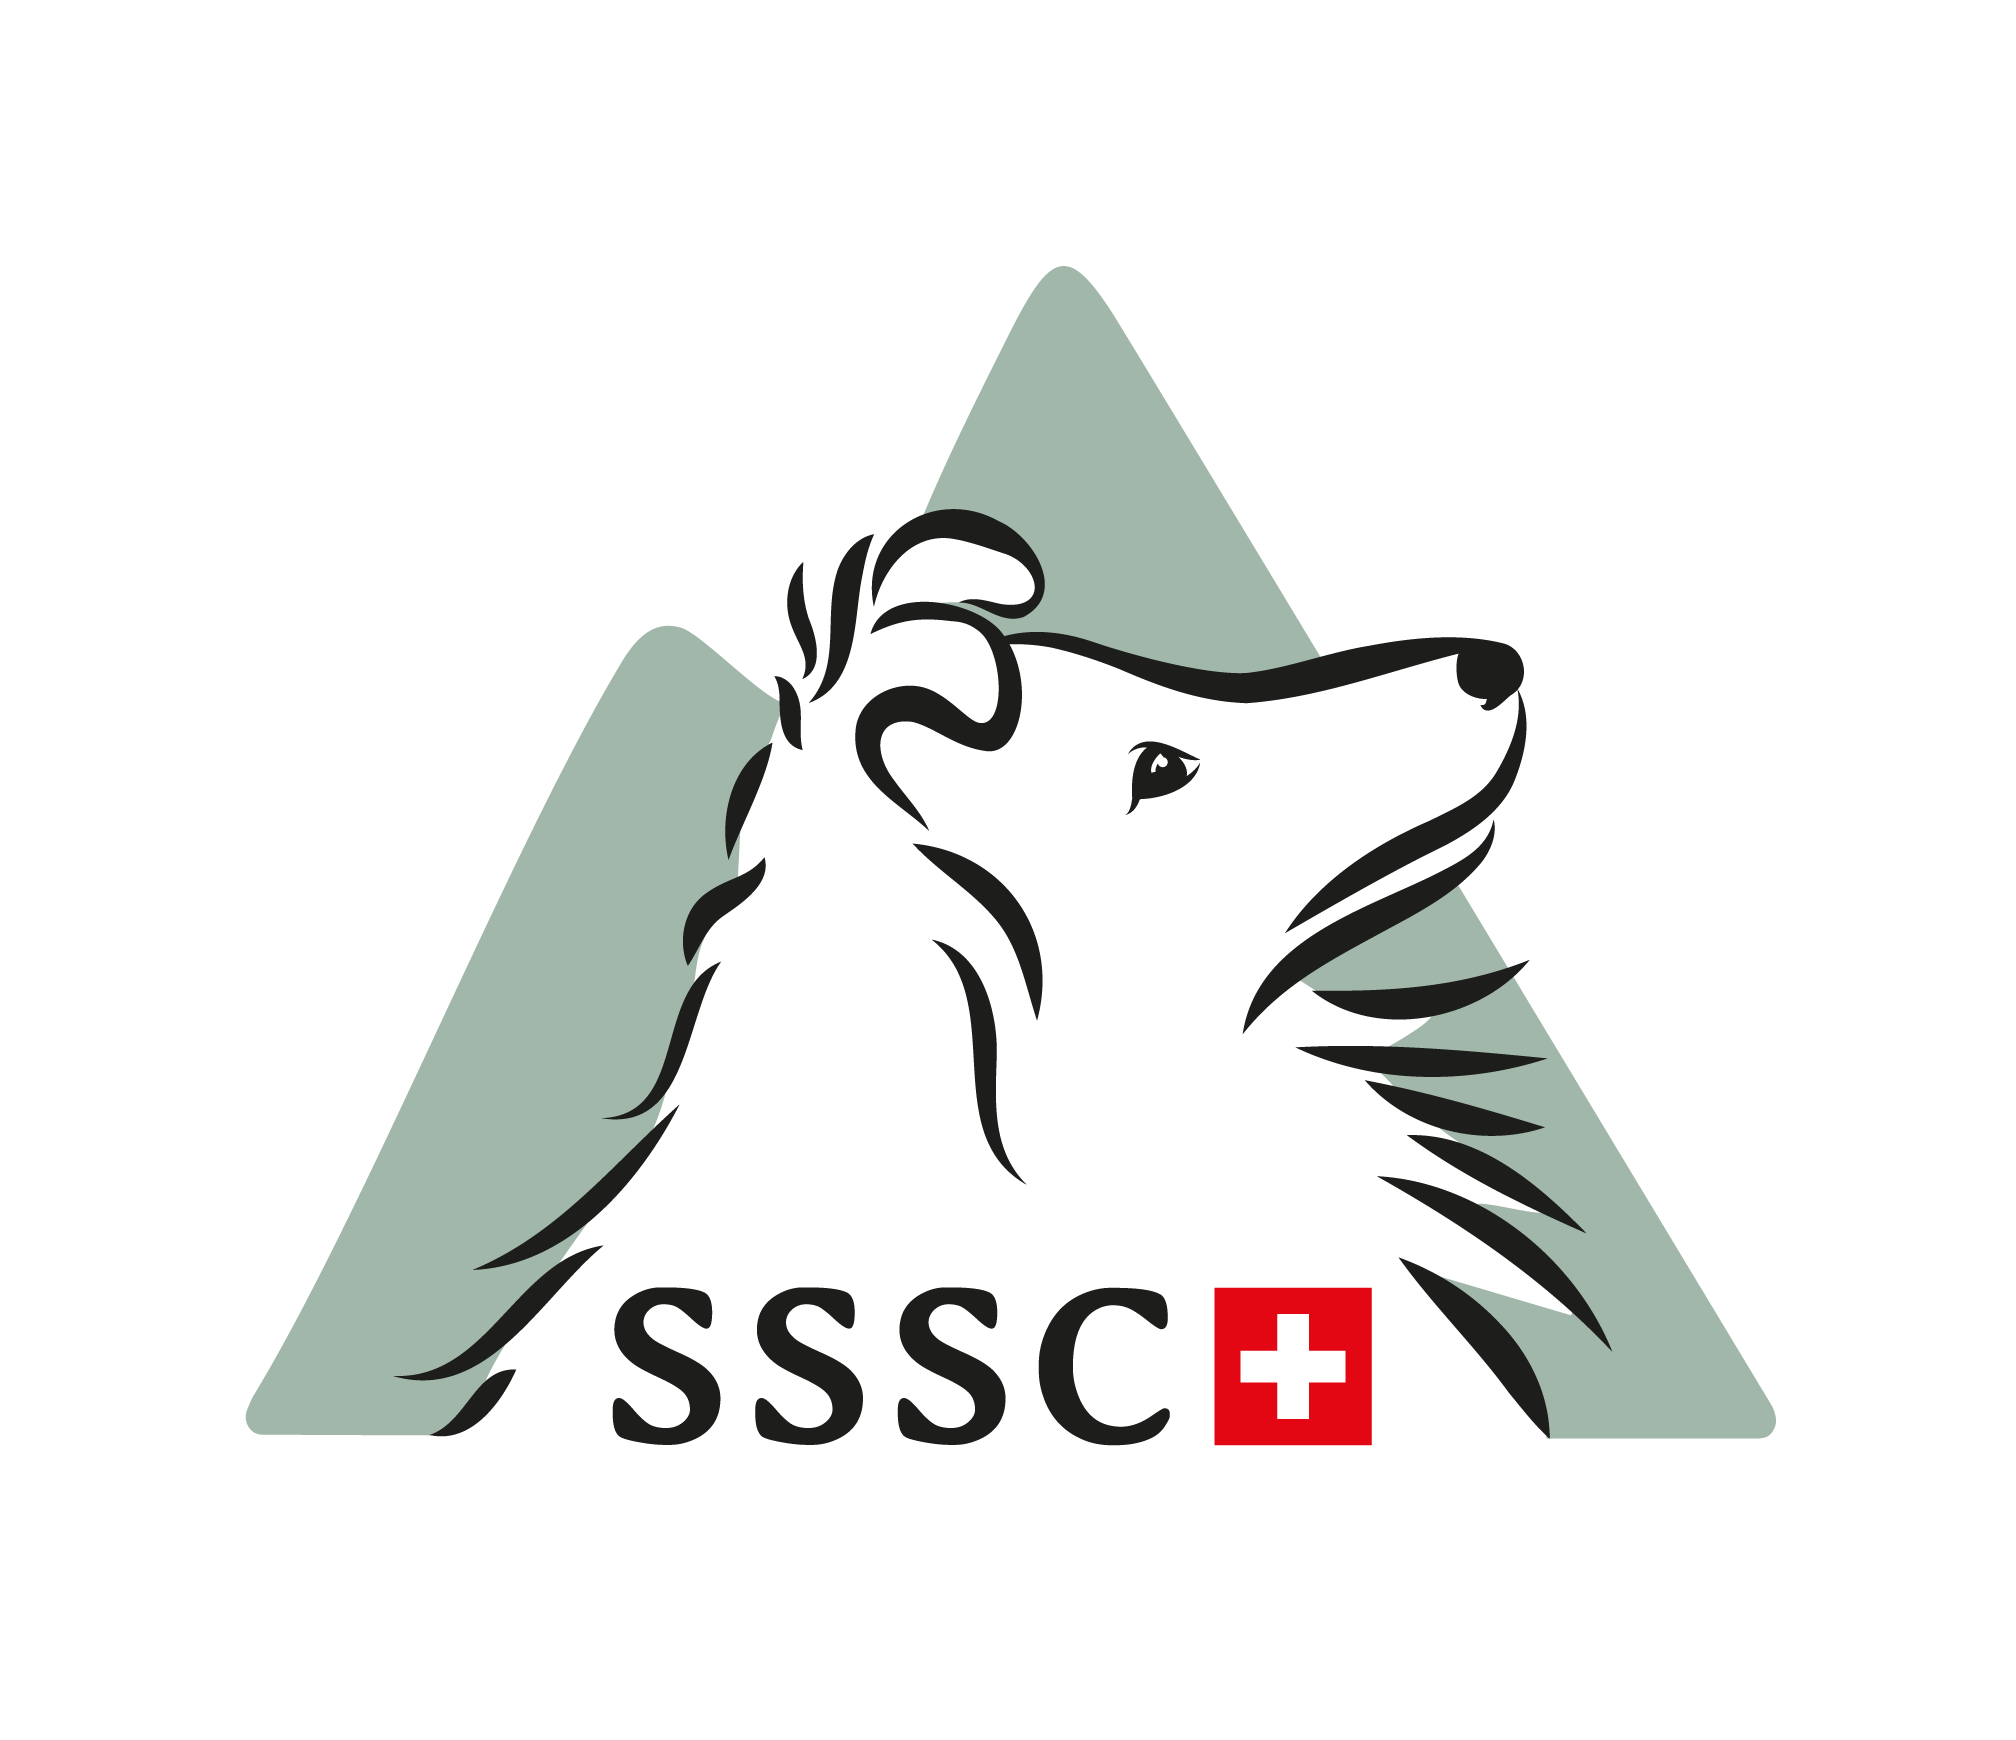 Schweizer Shetland Sheepdog Club